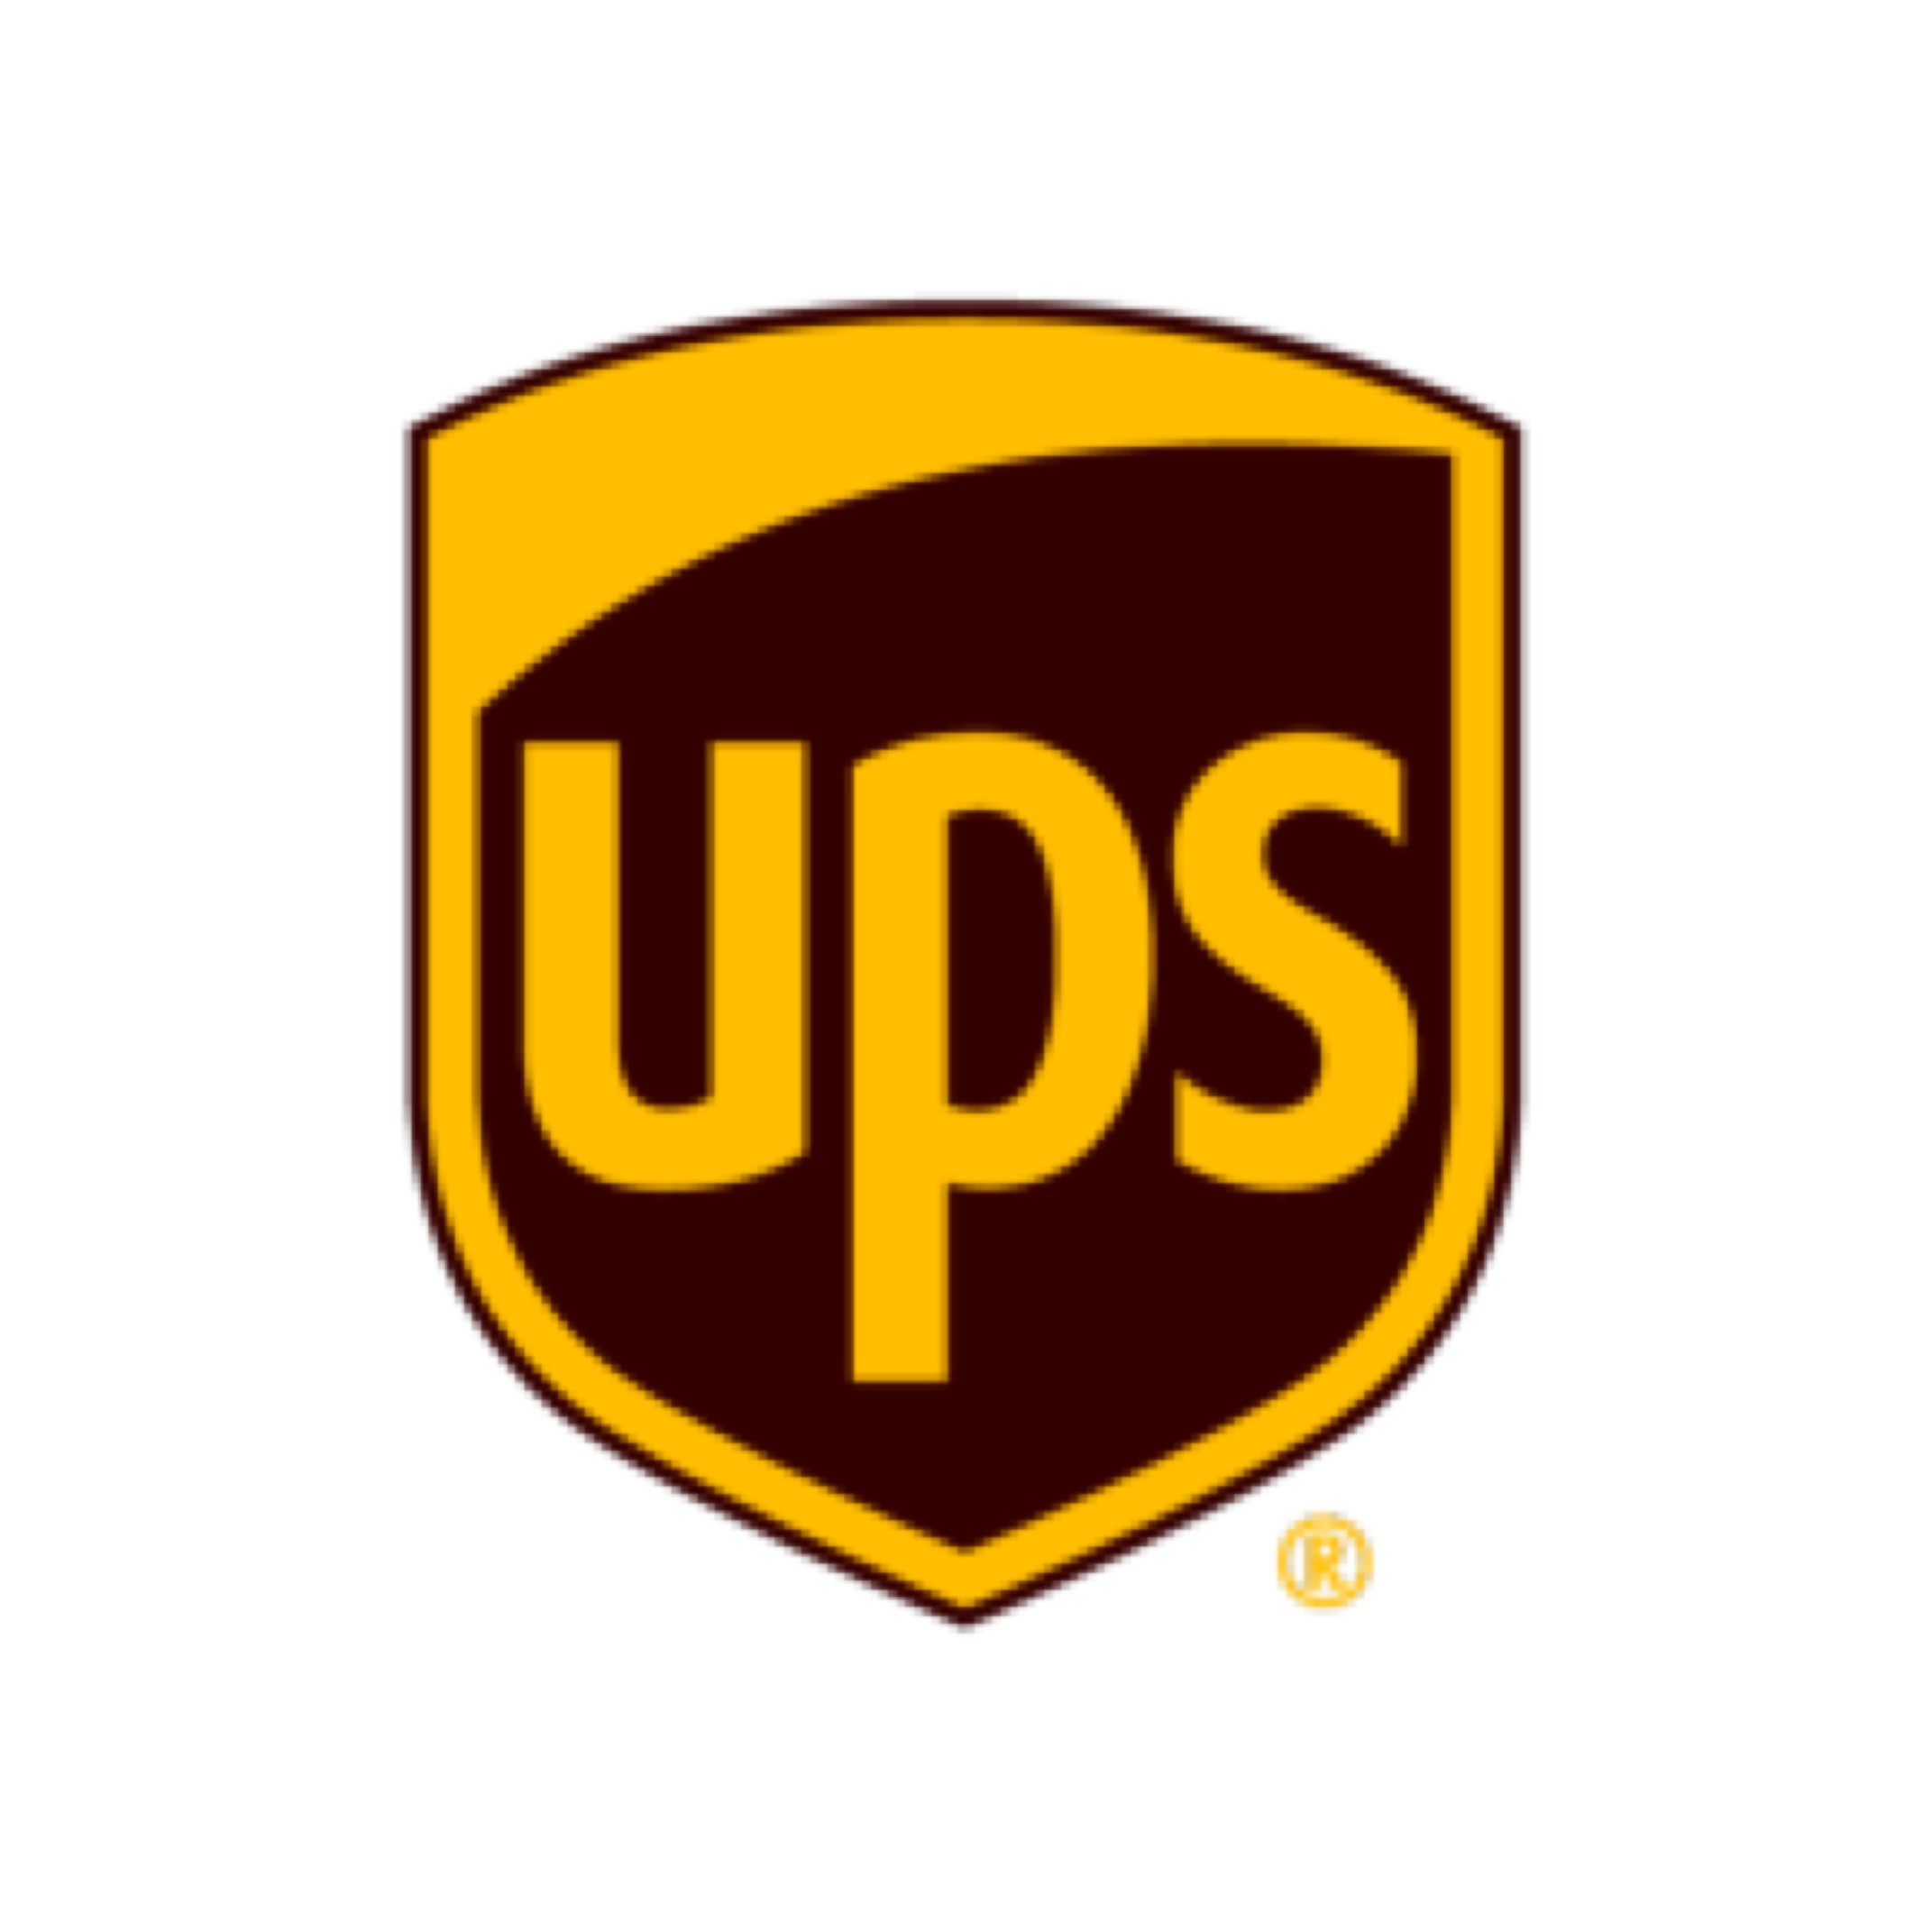 Company logo of UPS